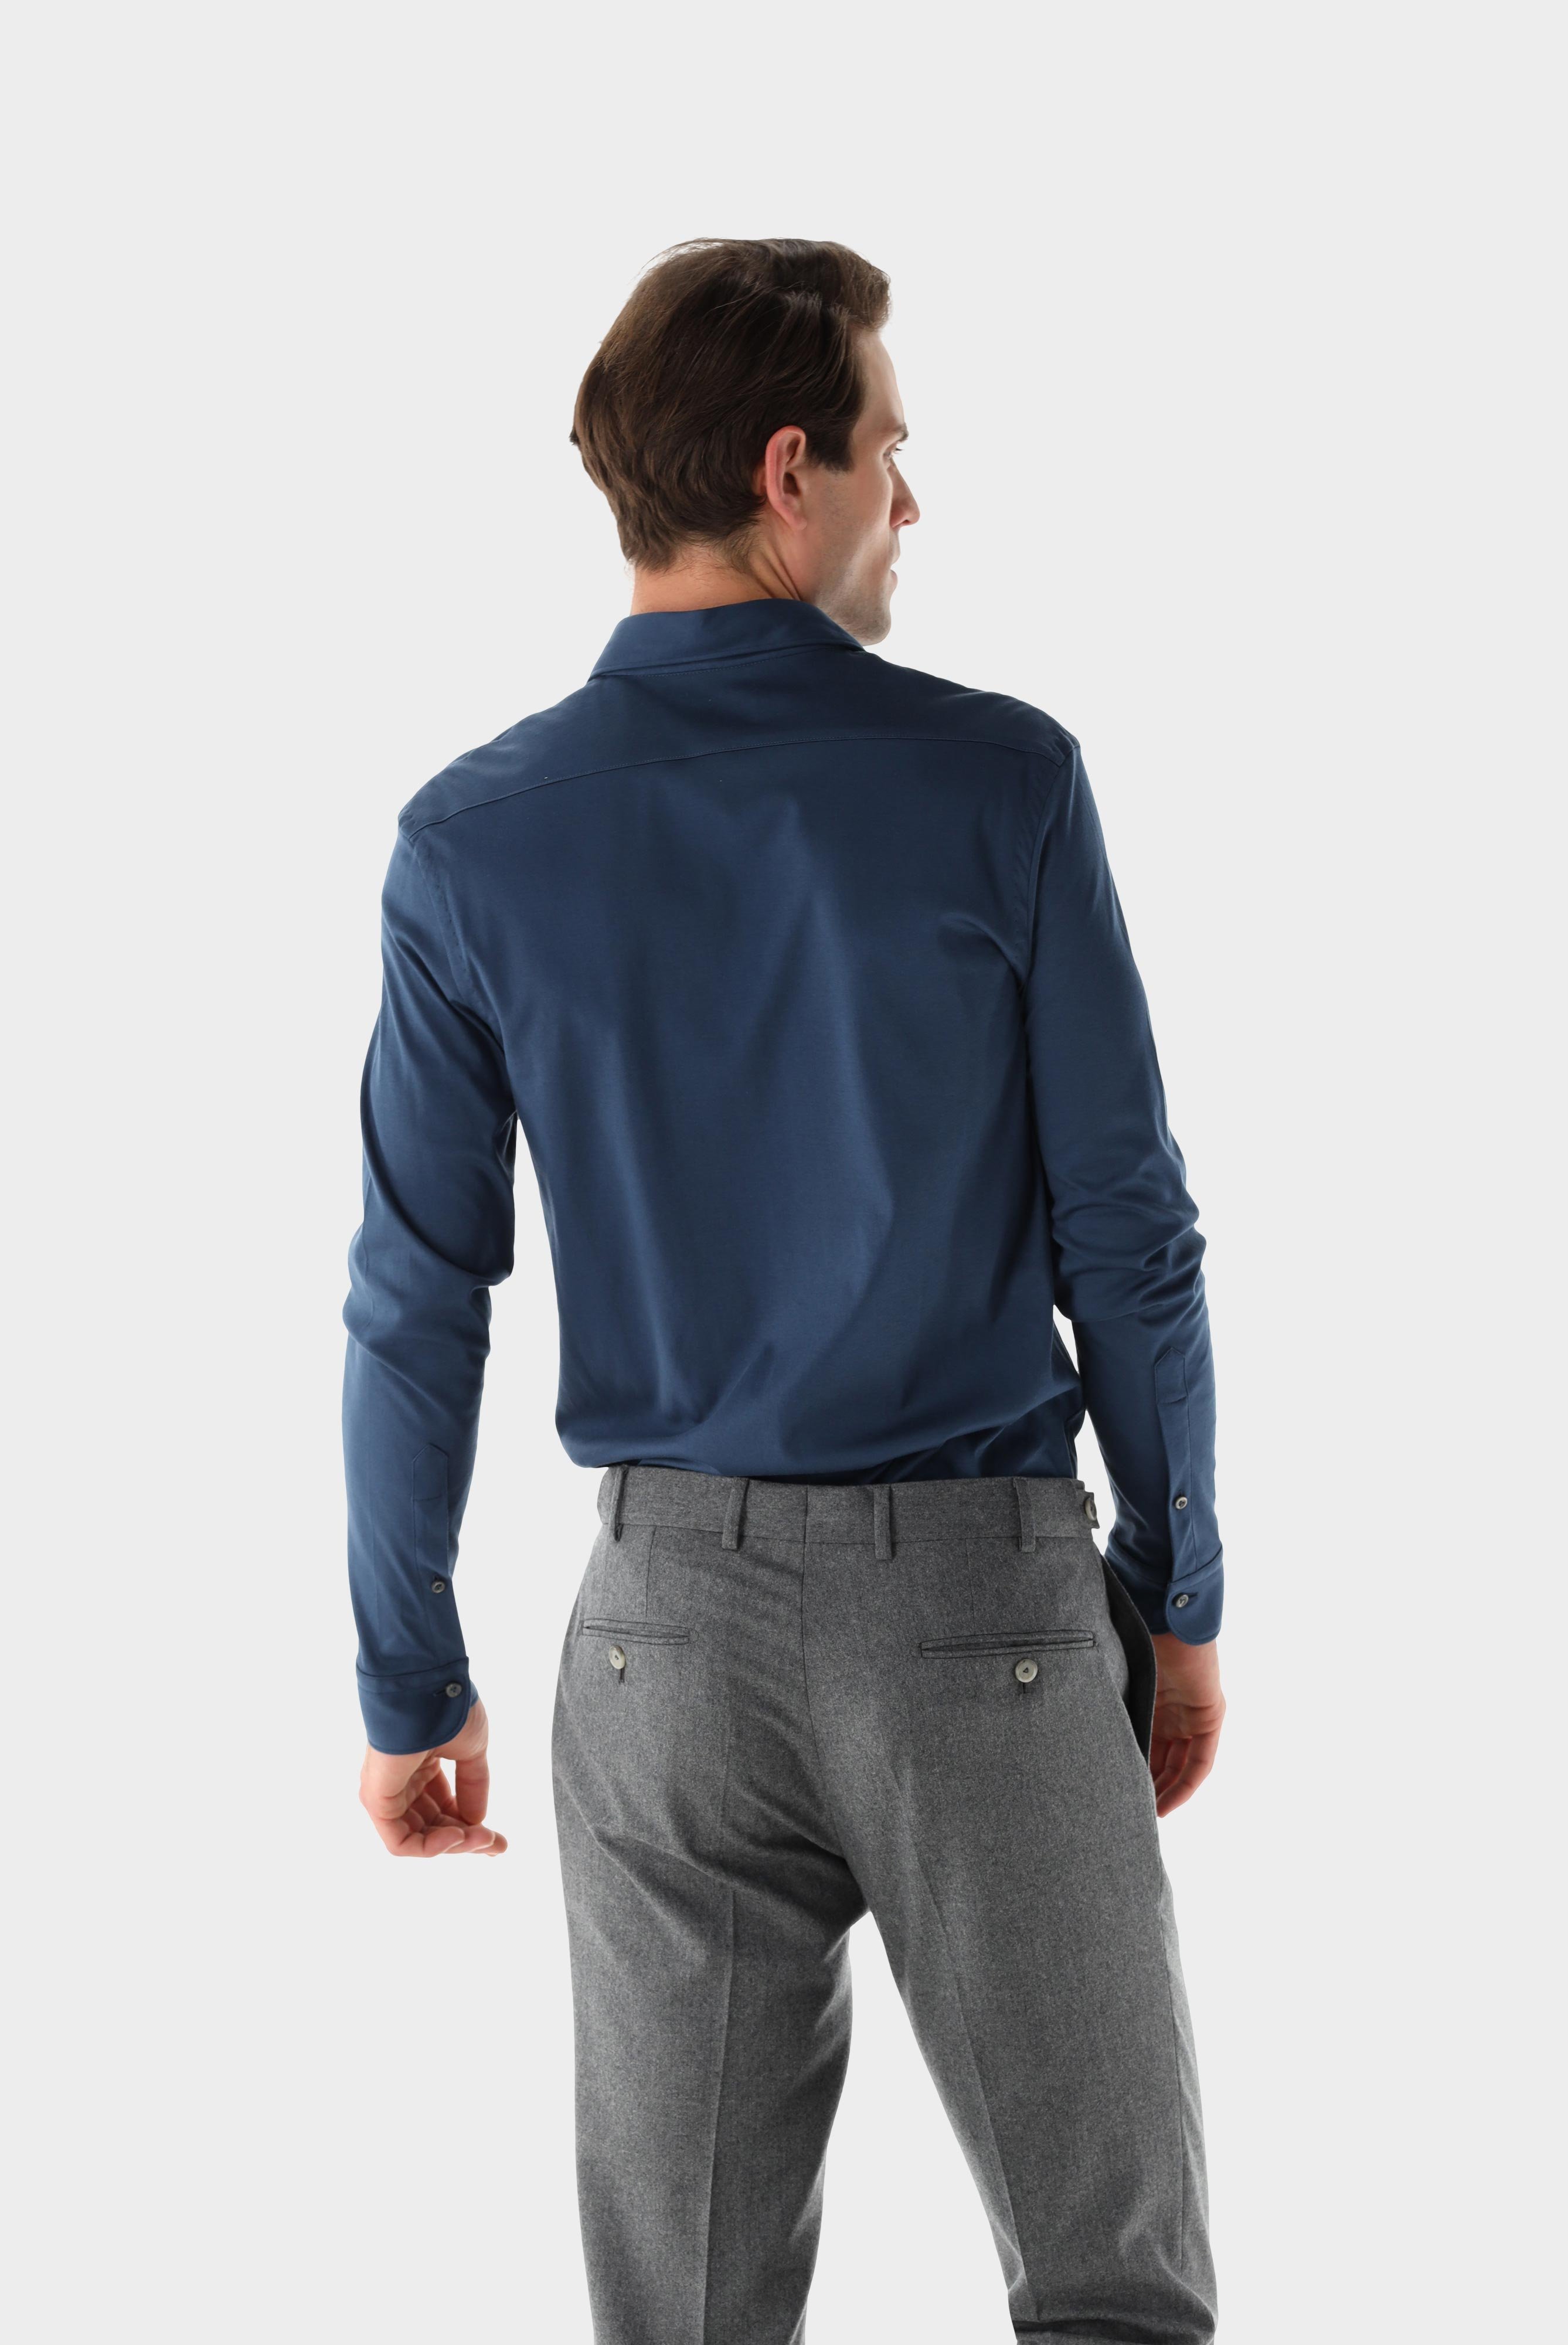 Casual Hemden+Jersey Hemd aus Schweizer Baumwolle Tailor Fit+20.1683.UC.180031.780.M